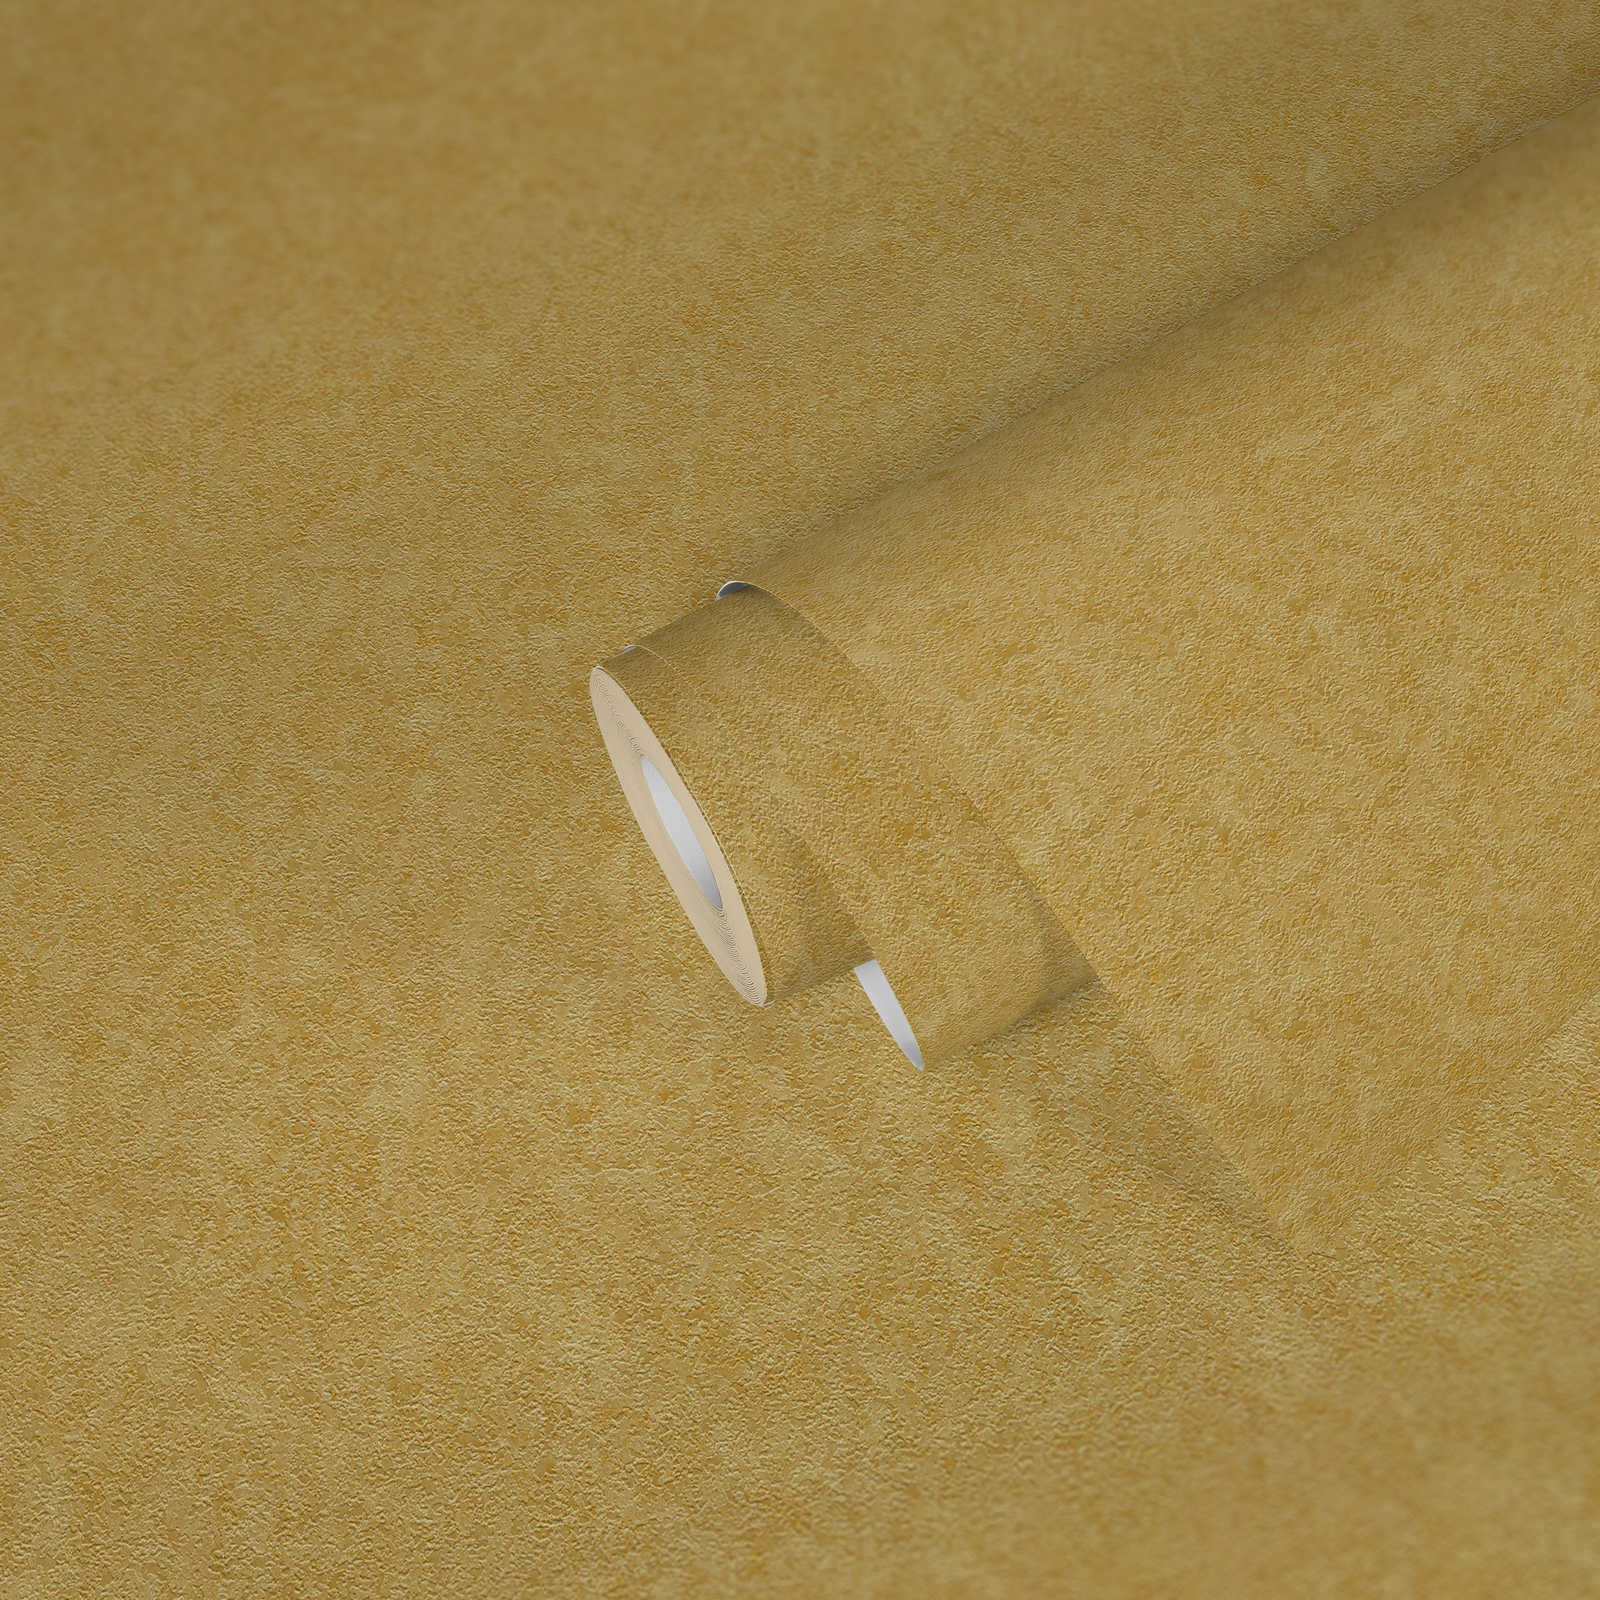             Papier peint uni doré VERSACE avec structure fine - or
        